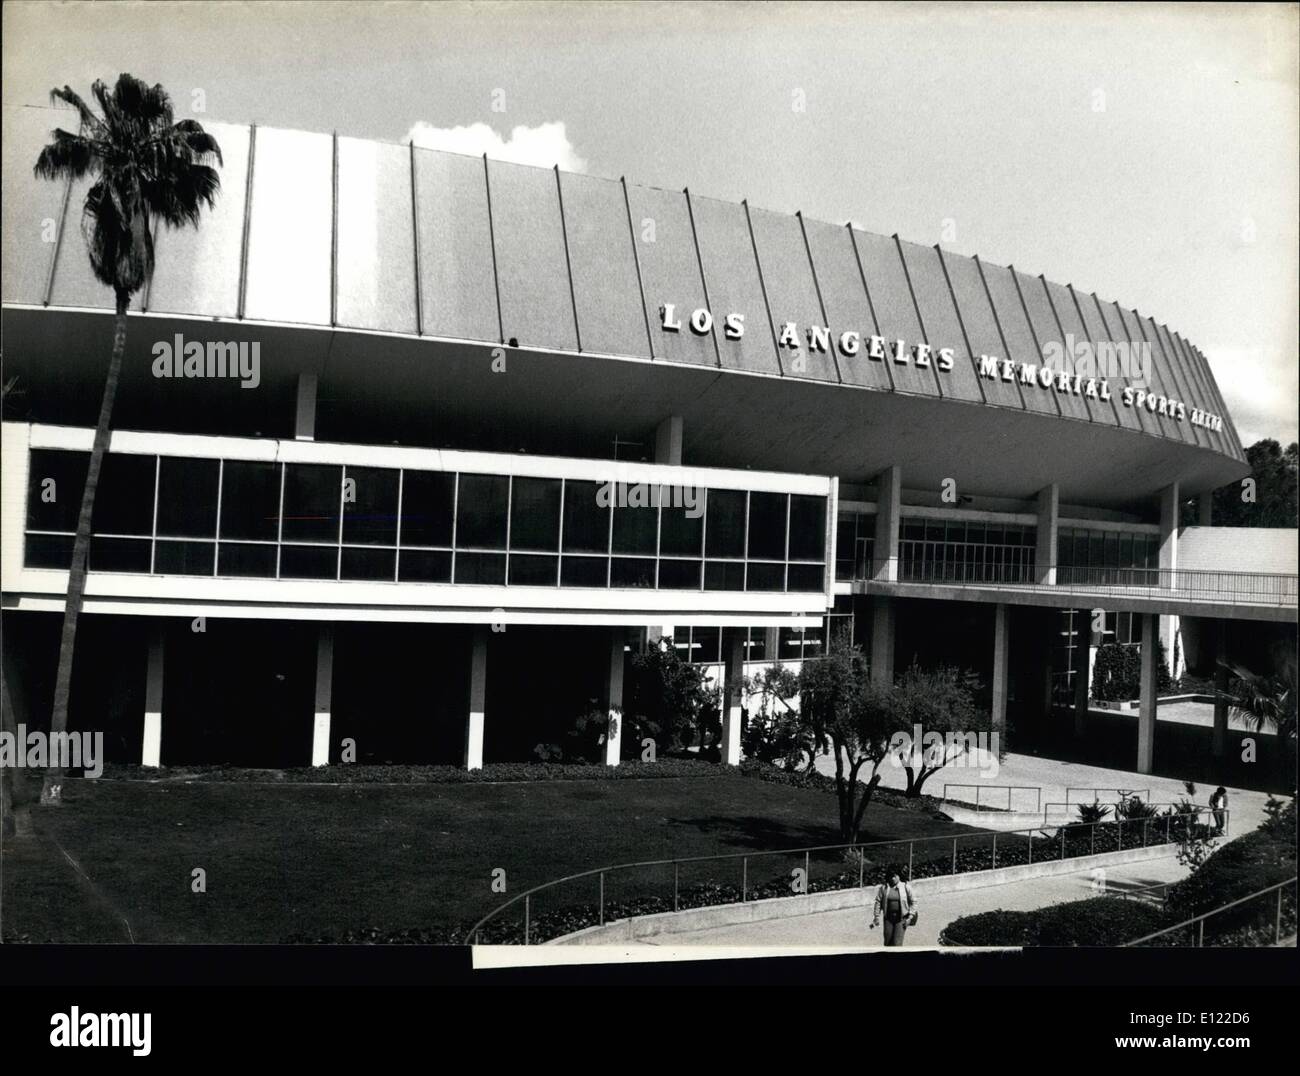 Juillet 07, 1983 - Un an avant les Jeux Olympiques de Los Angeles. Los Angeles Memorial Sports Arena, situé à proximité de Memorial Coliseum, au centre-ville de L.A., est le site pour les événements de boxe. Keystone Zurich Juillet 1983 Banque D'Images